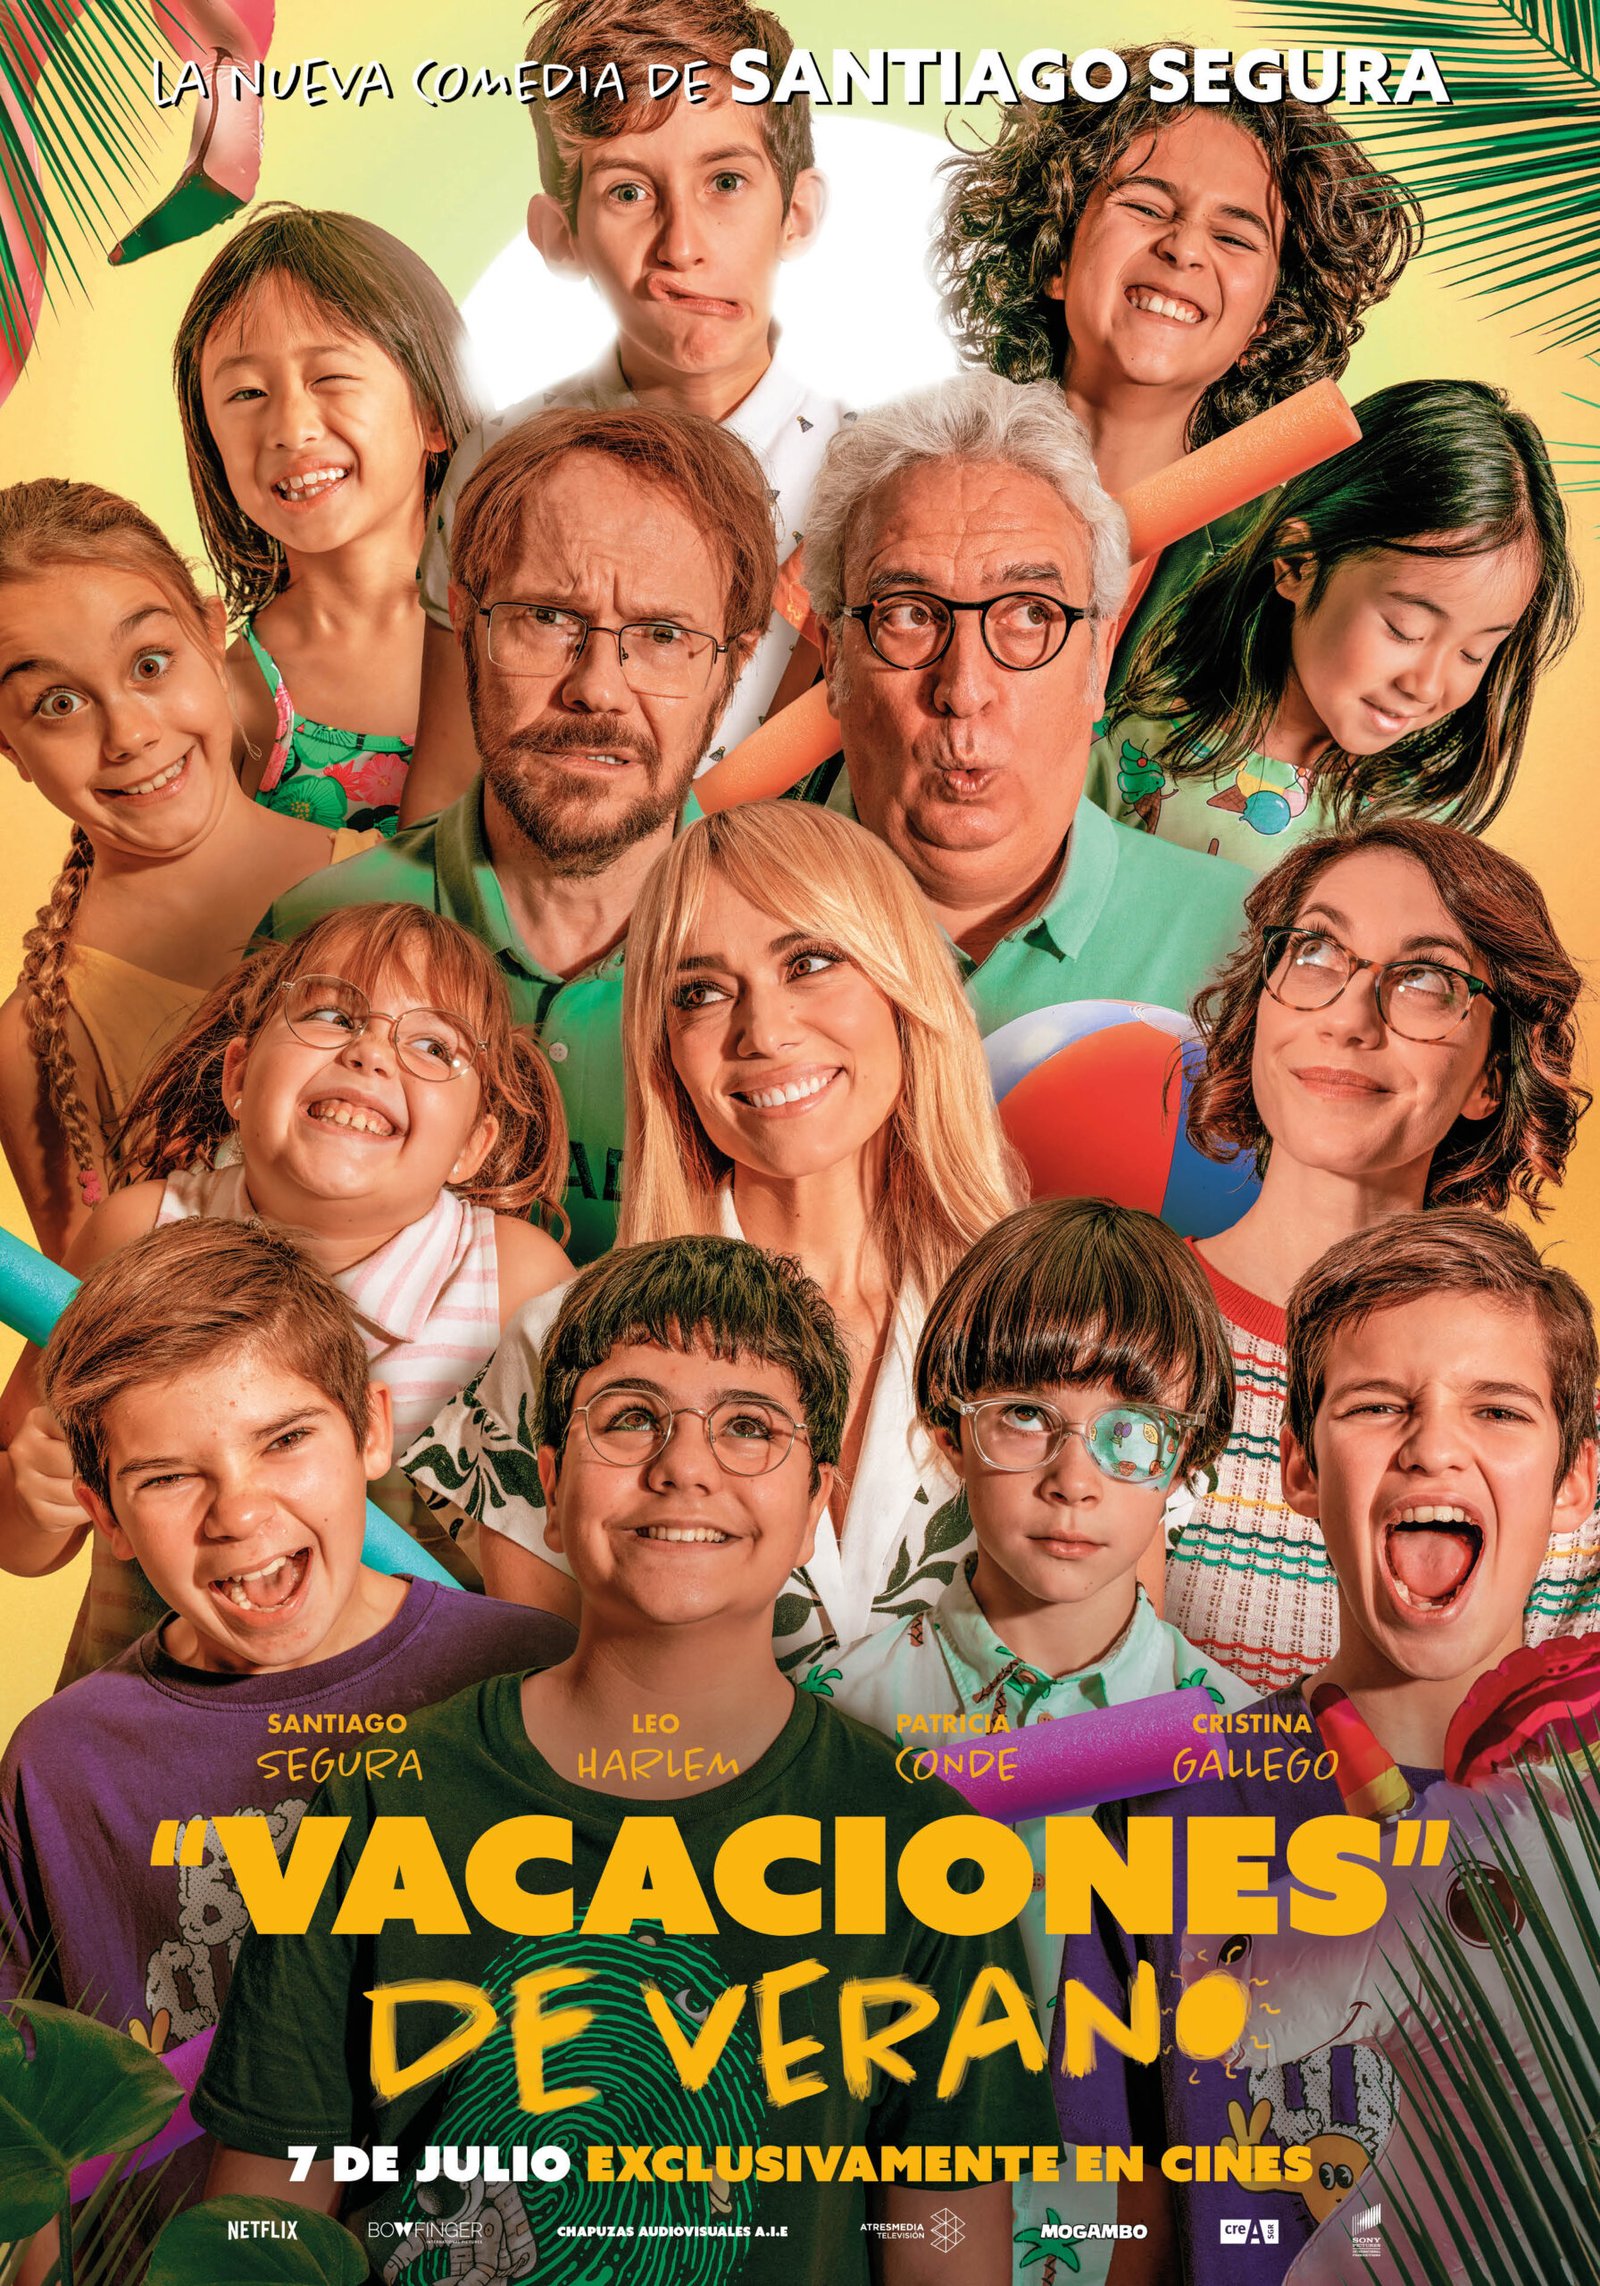 ‘Vacaciones de verano’ Tráiler y póster de la nueva comedia familiar de Santiago Segura